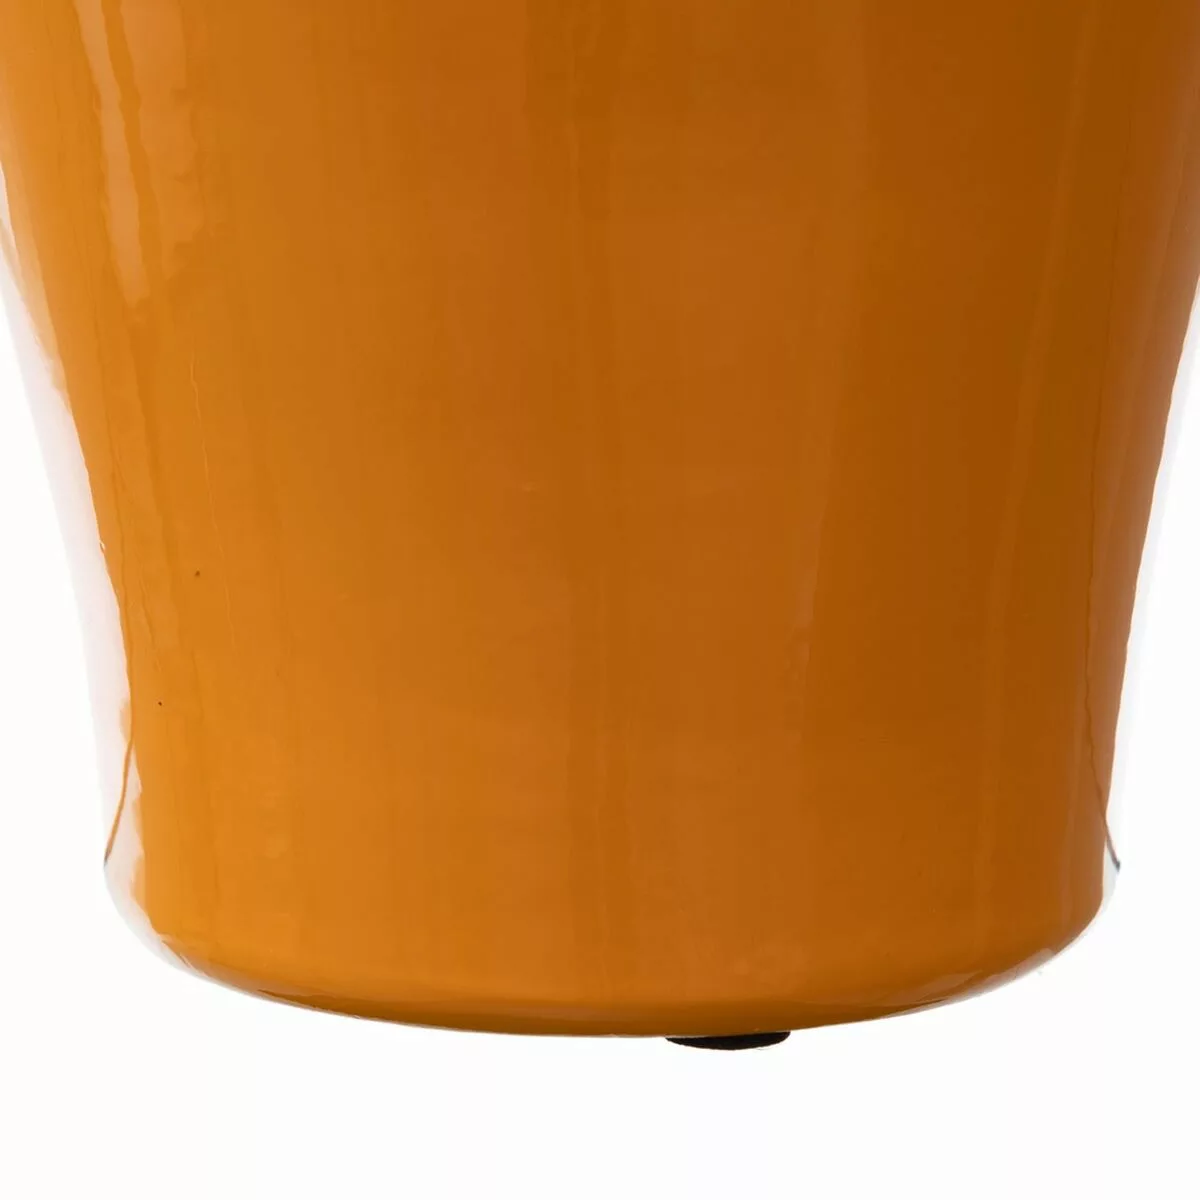 Vase 18 X 18 X 46,5 Cm Aus Keramik Gelb günstig online kaufen